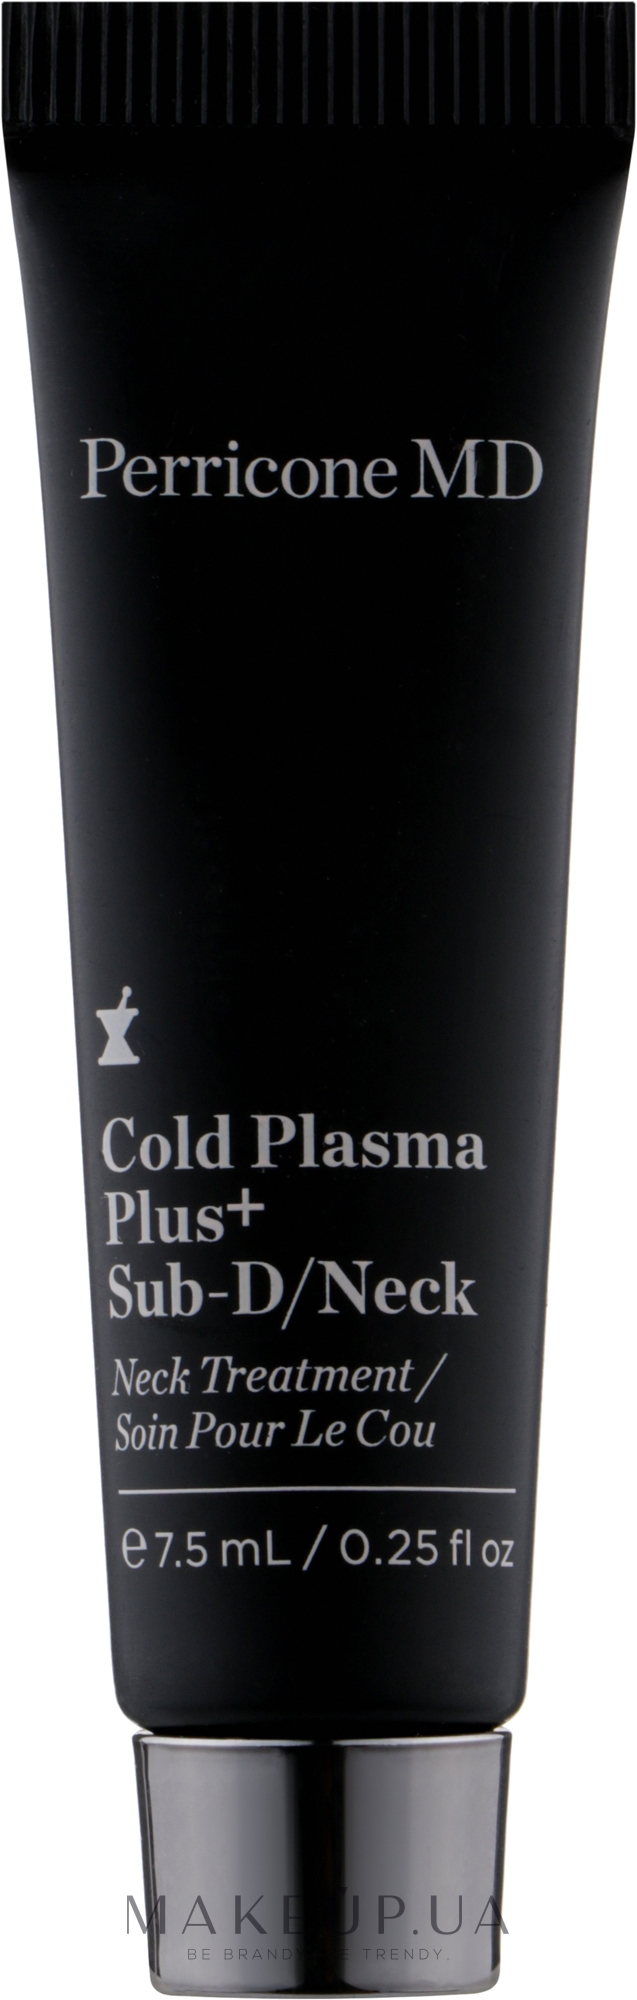 Антивозрастной крем-сыворотка для лица, шеи, подбородка и зоны декольте - Perricone MD Cold Plasma Plus Sub-D/Neck (мини) — фото 7.5ml